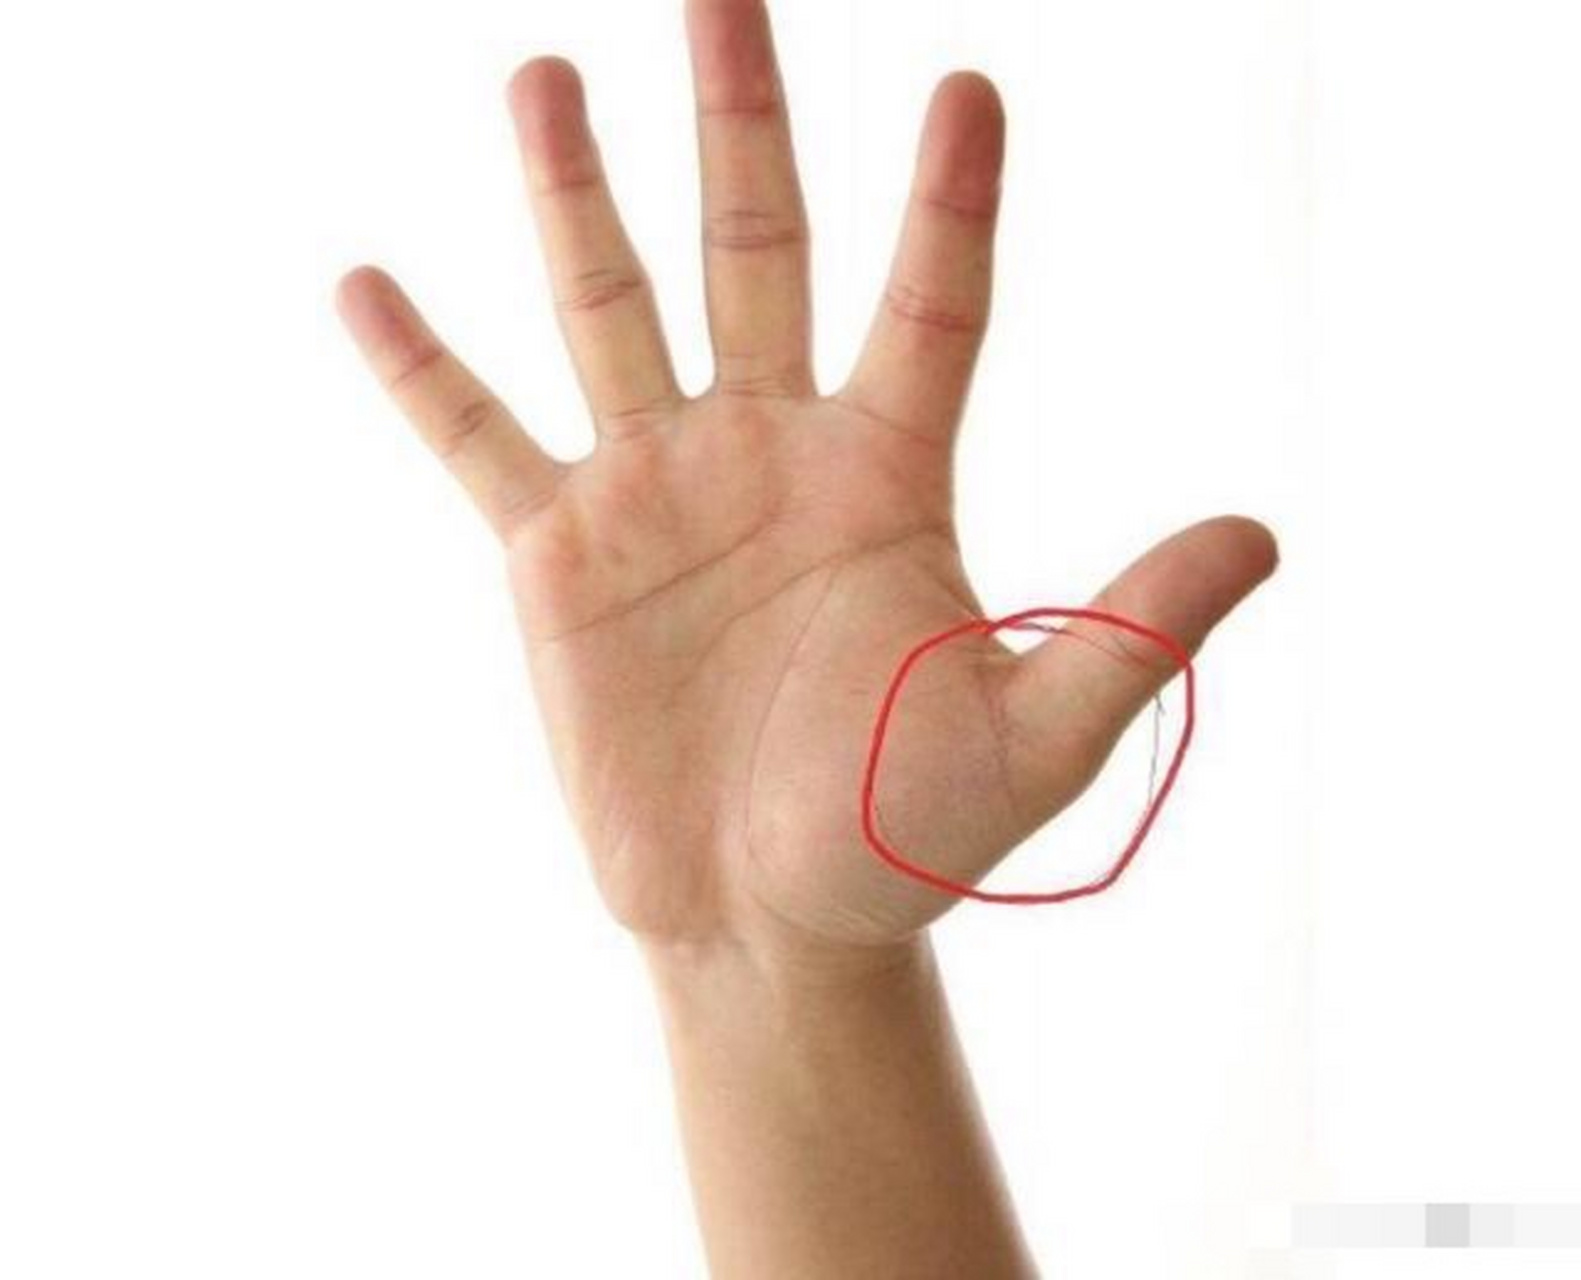 如果在大拇指的第二关节处的上二分之一处长横纹,也是有妇科疾病